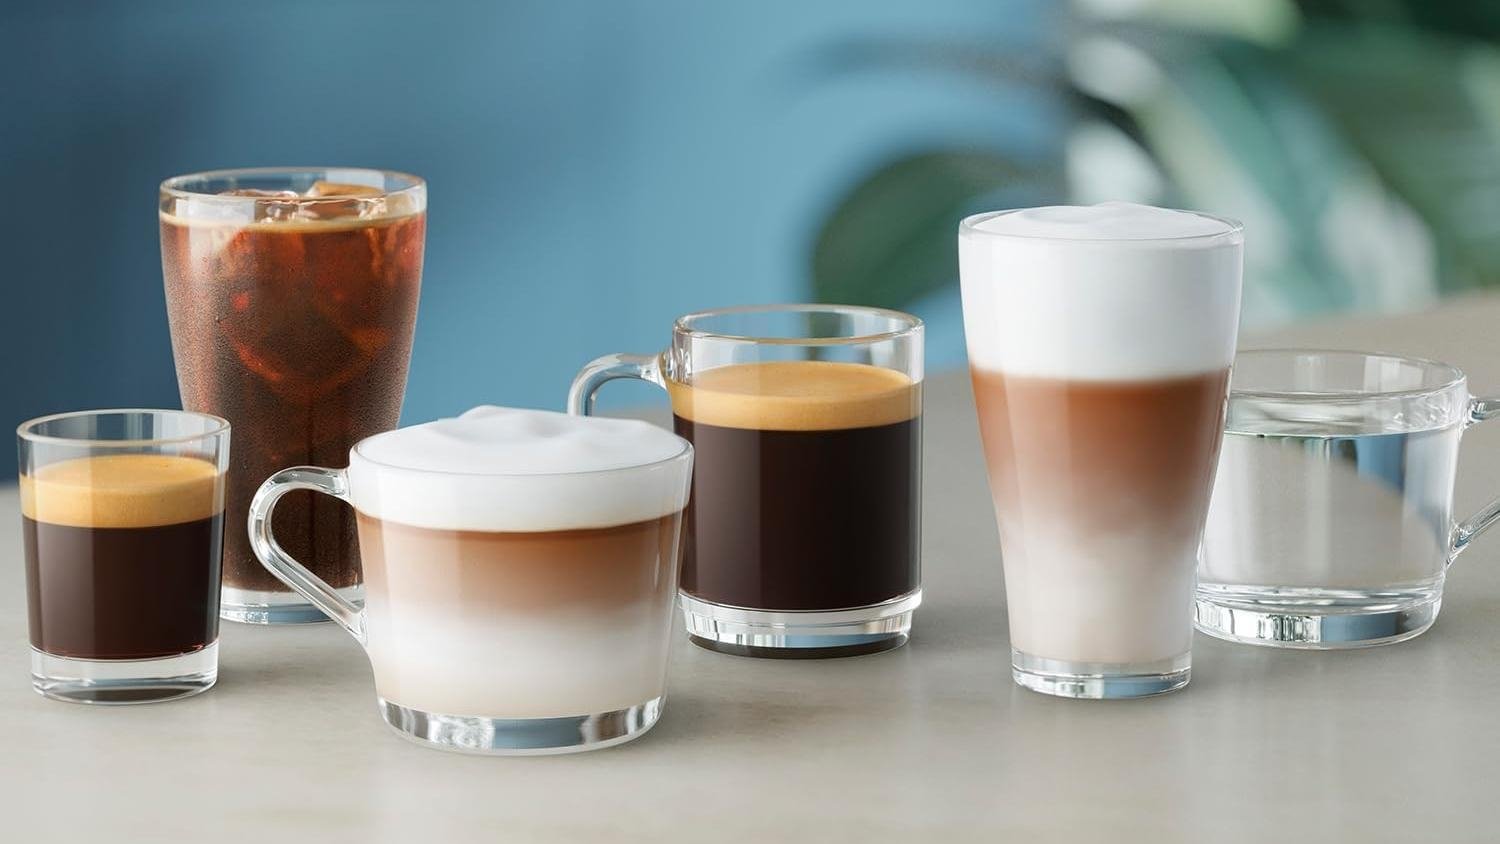 Para amantes del café reine molido: esta cafetera superautomática tiene 100  euros de descuento limitado